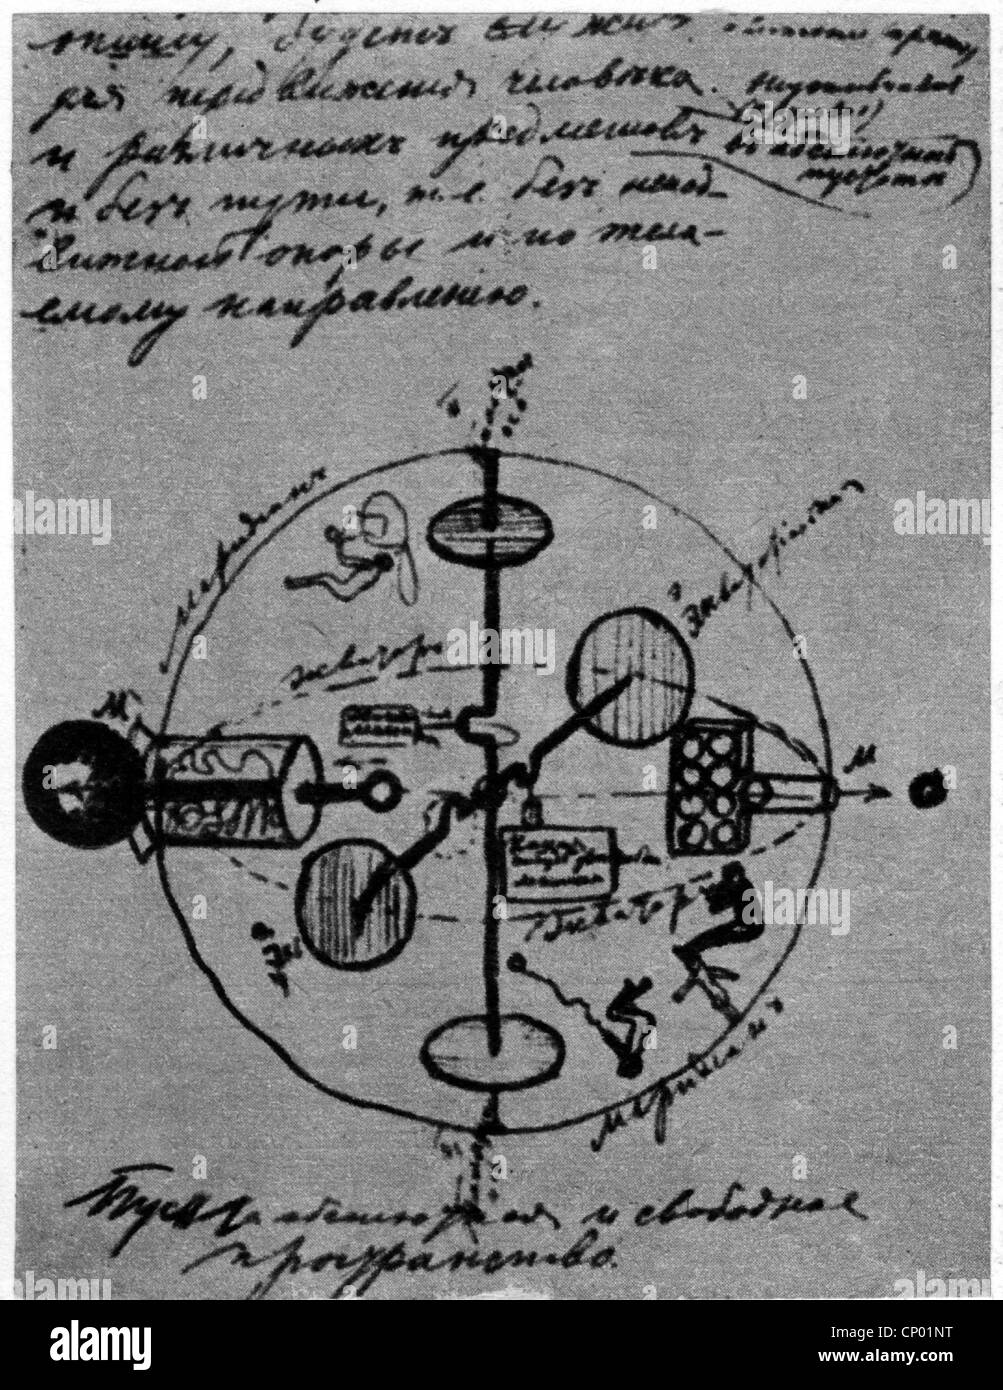 Tsiolkovskii, Konstantin Eduardovich, 17.9.1857 - 19.9.1935, fisico russo, matematico, schizzo che mostra un veicolo spaziale, Foto Stock